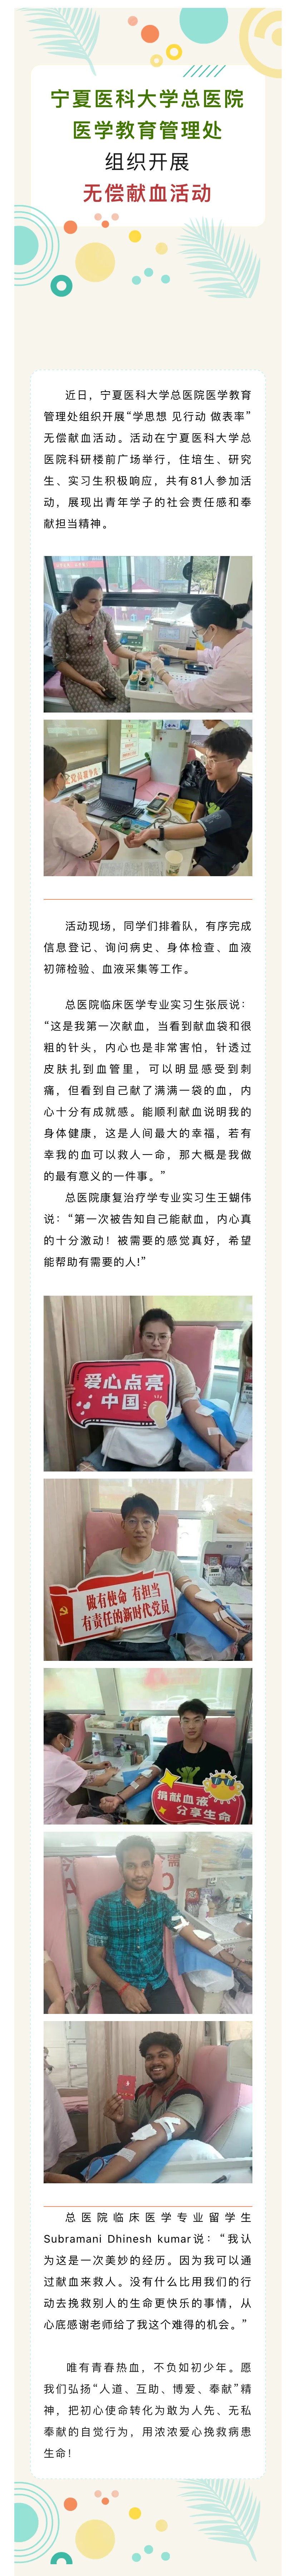 宁夏医科大学总医院医学教育管理处组织开展无偿献血活动